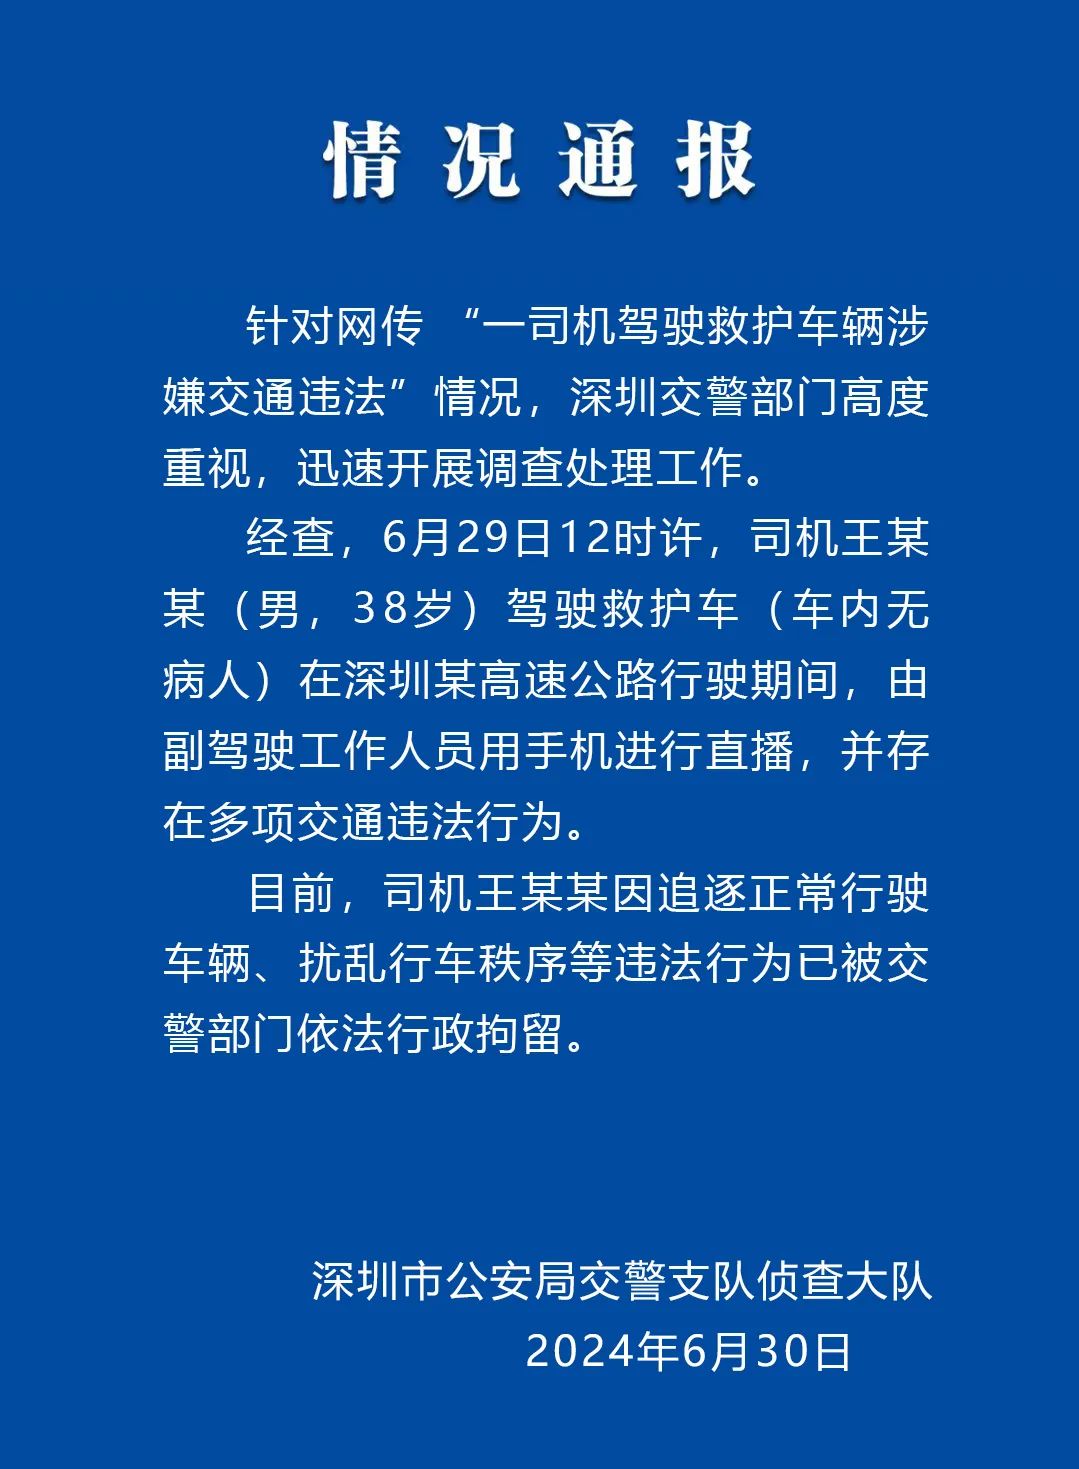 图源：“深圳交警权威发布”微信公众号